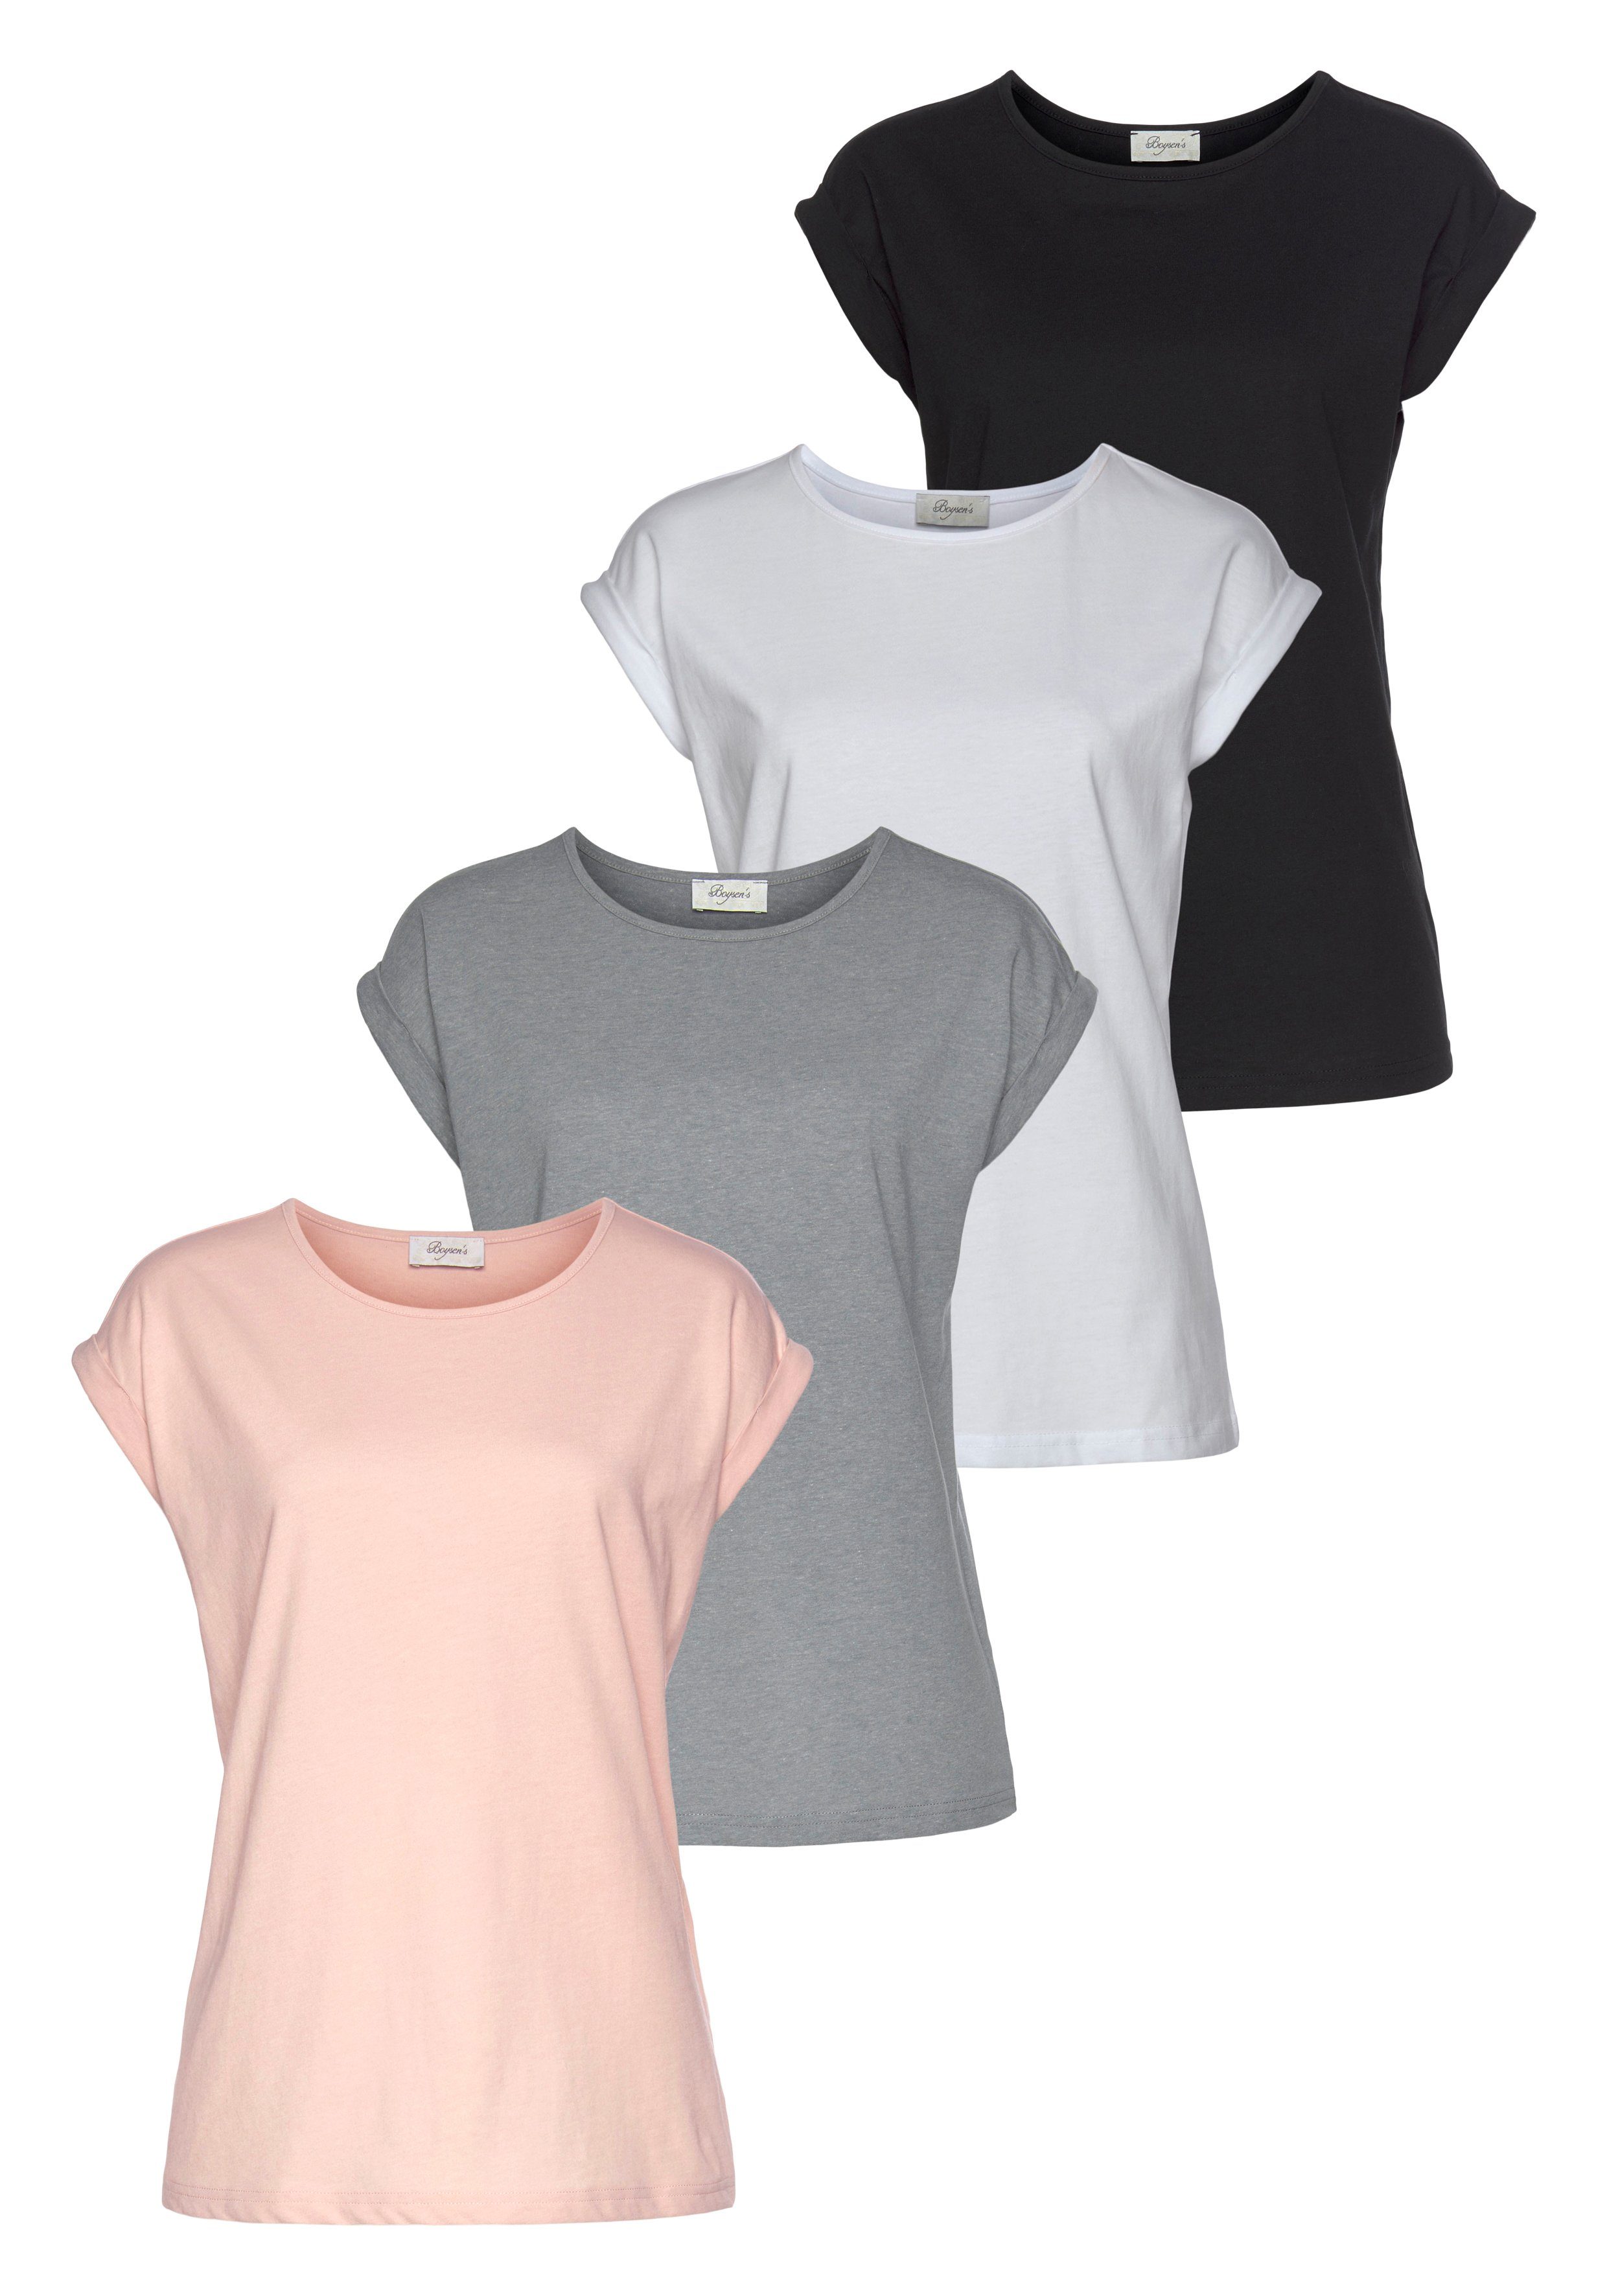 Boysen's T-Shirt (Packung) im 4er Pack grau, rose, weiß, schwarz